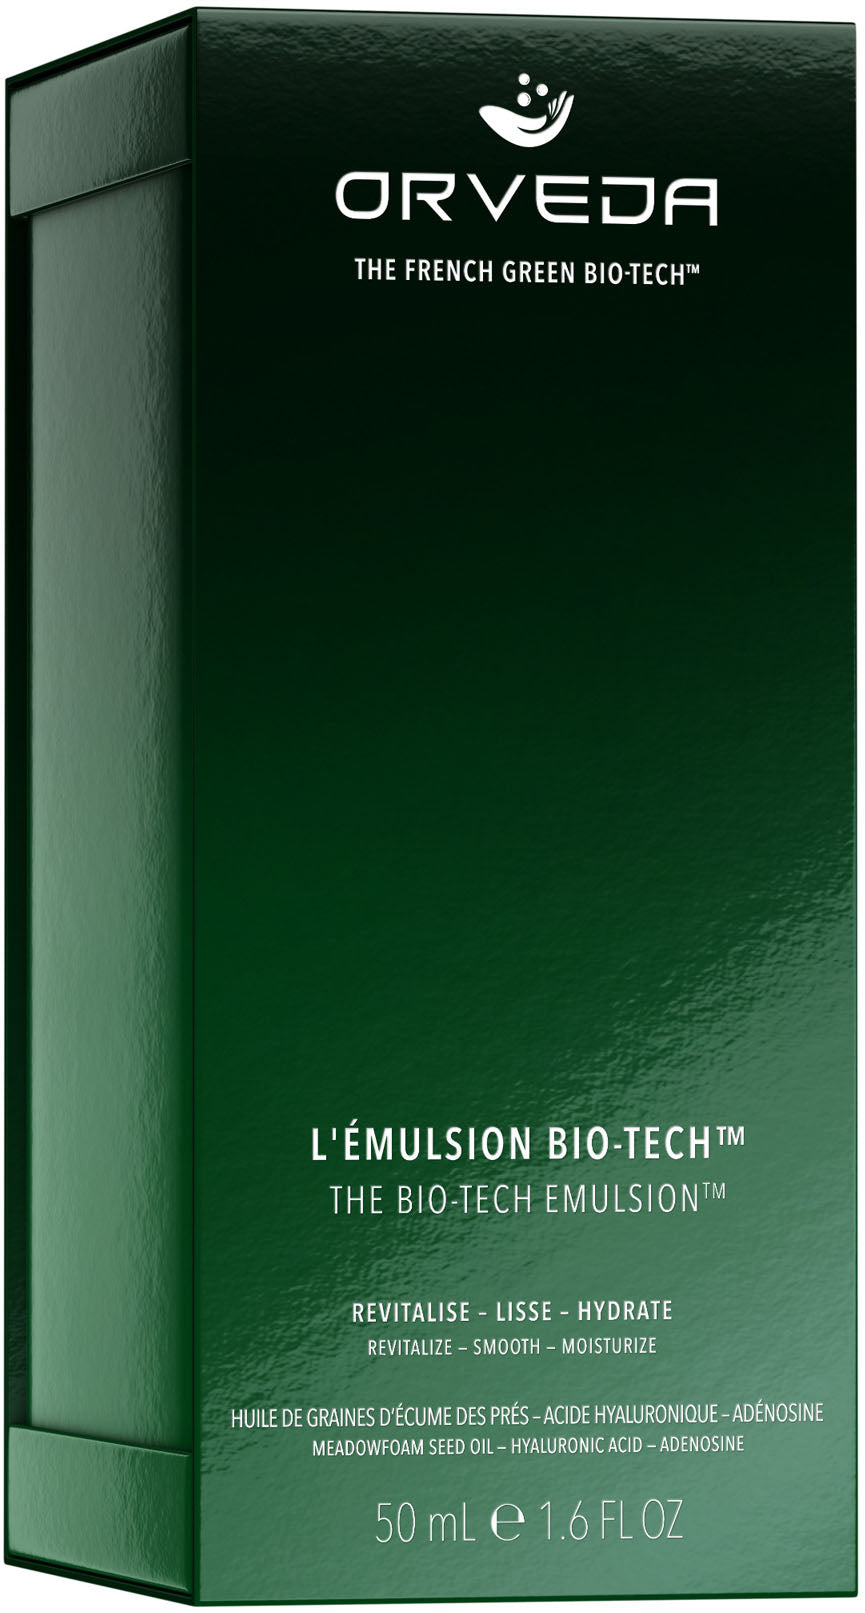 the bio-tech emulsion™